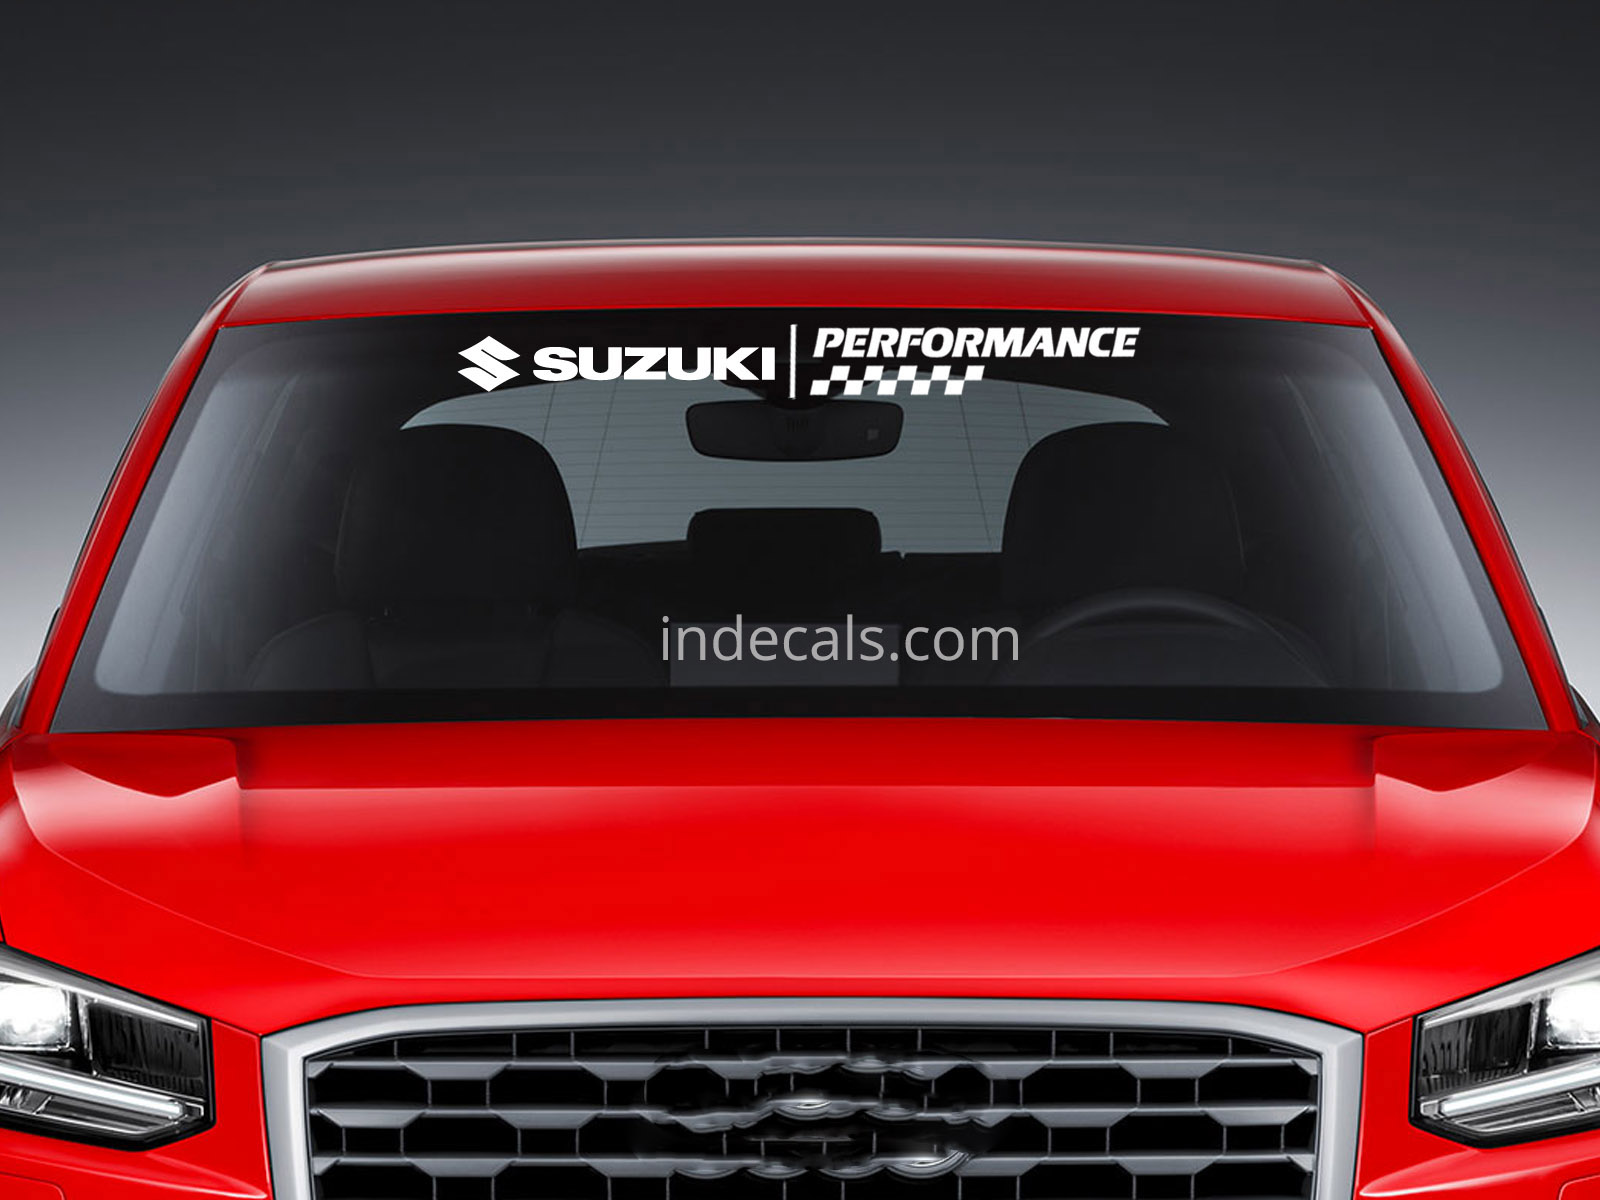 1 x Suzuki Performance Sticker for Windshield or Back Window - White